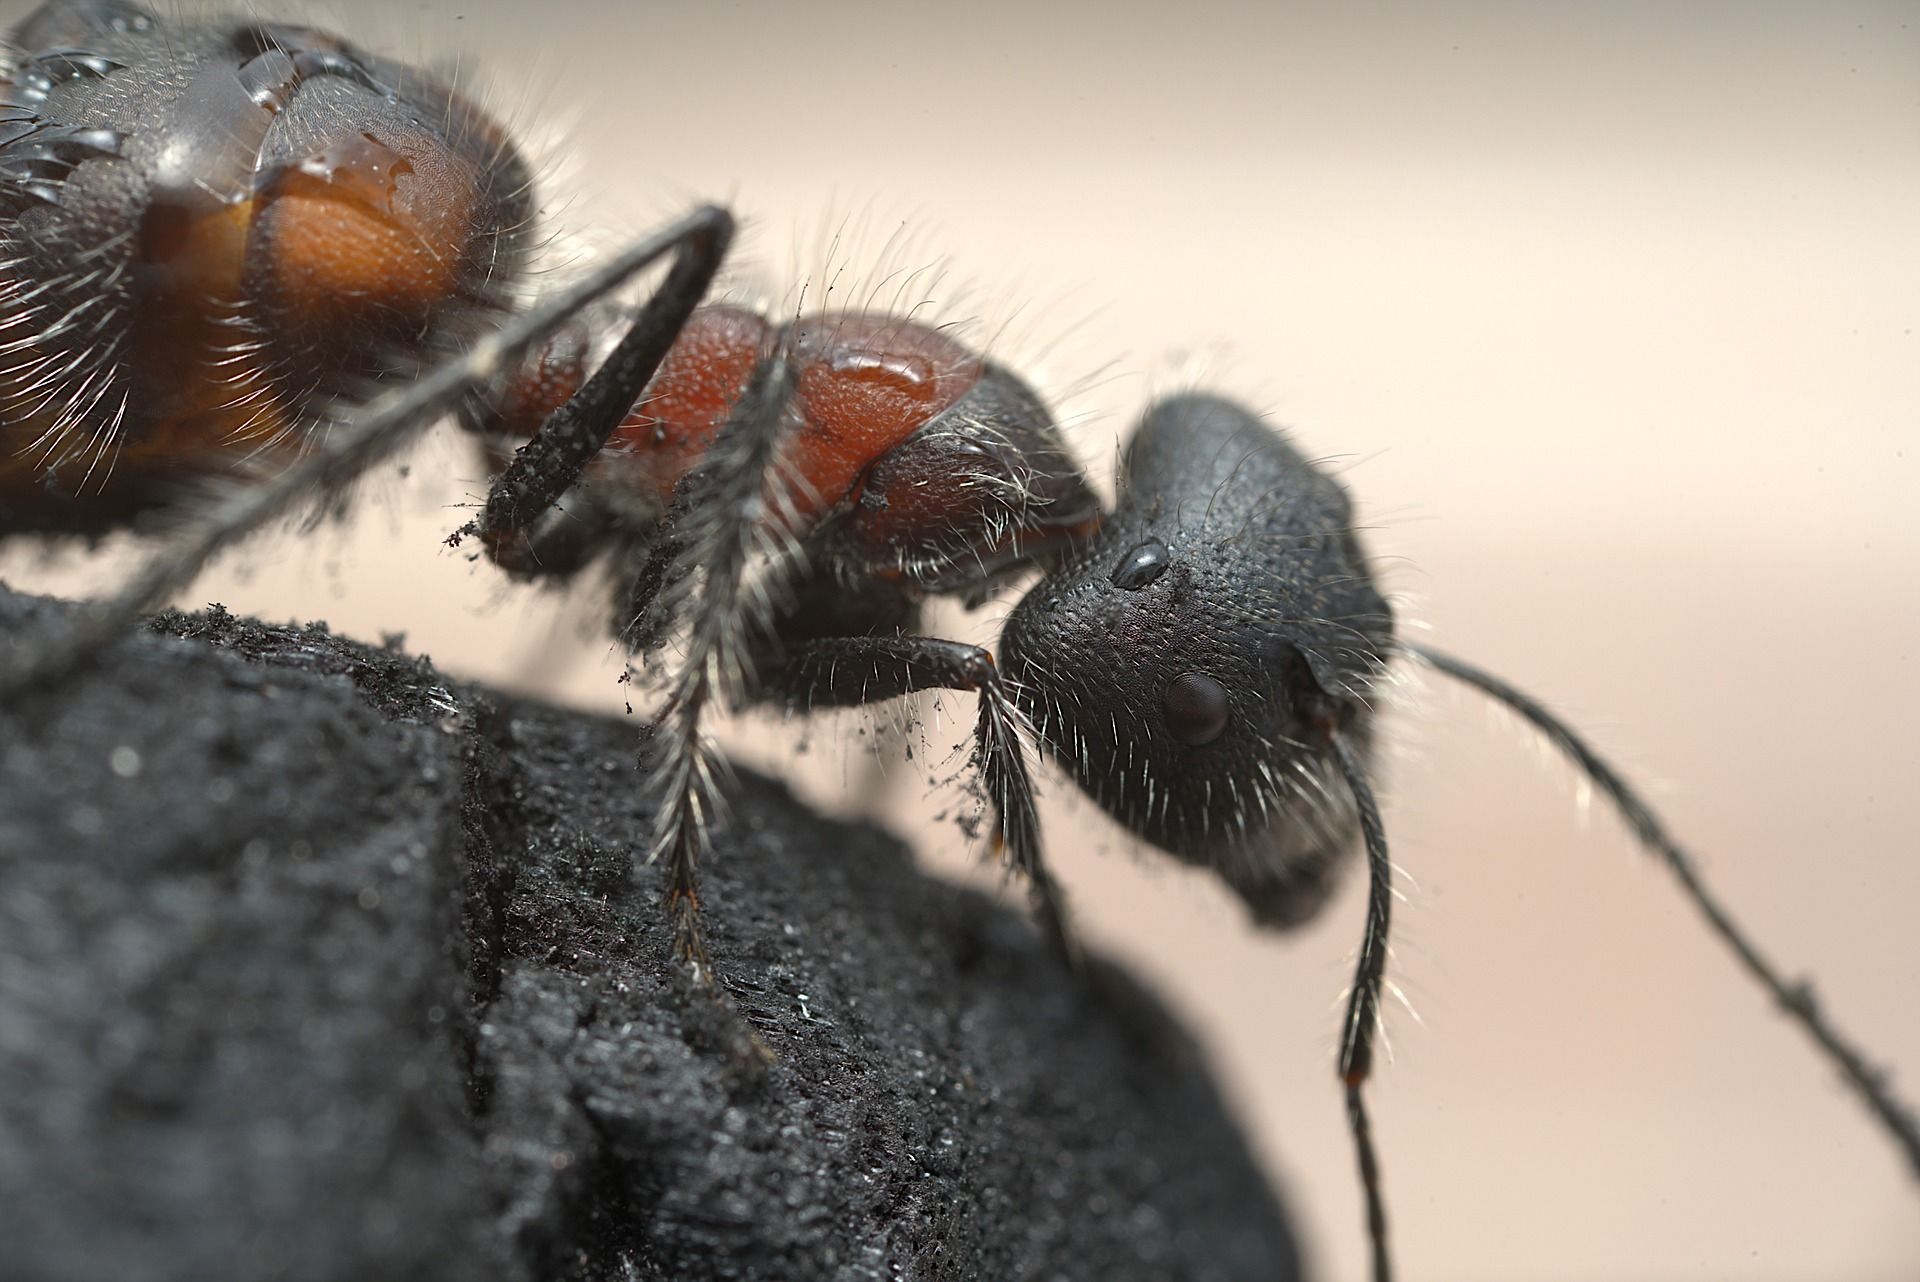 control carpenter ants